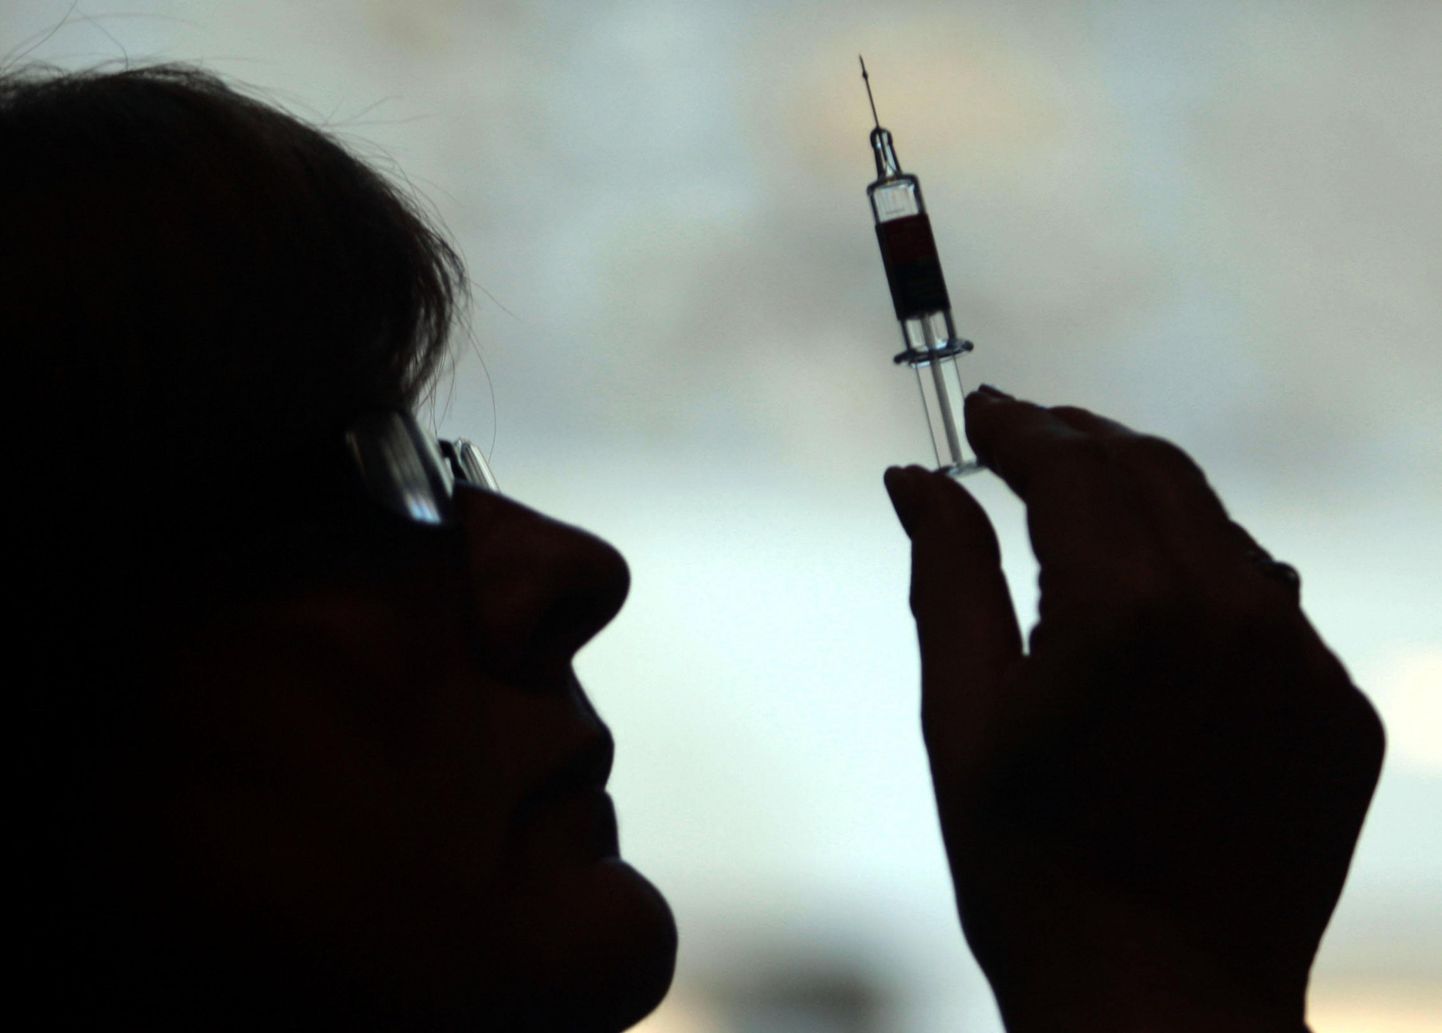 Eestis nõustus väitega, et vaktsiinid on turvalised vaid 51 protsenti vastanutest.